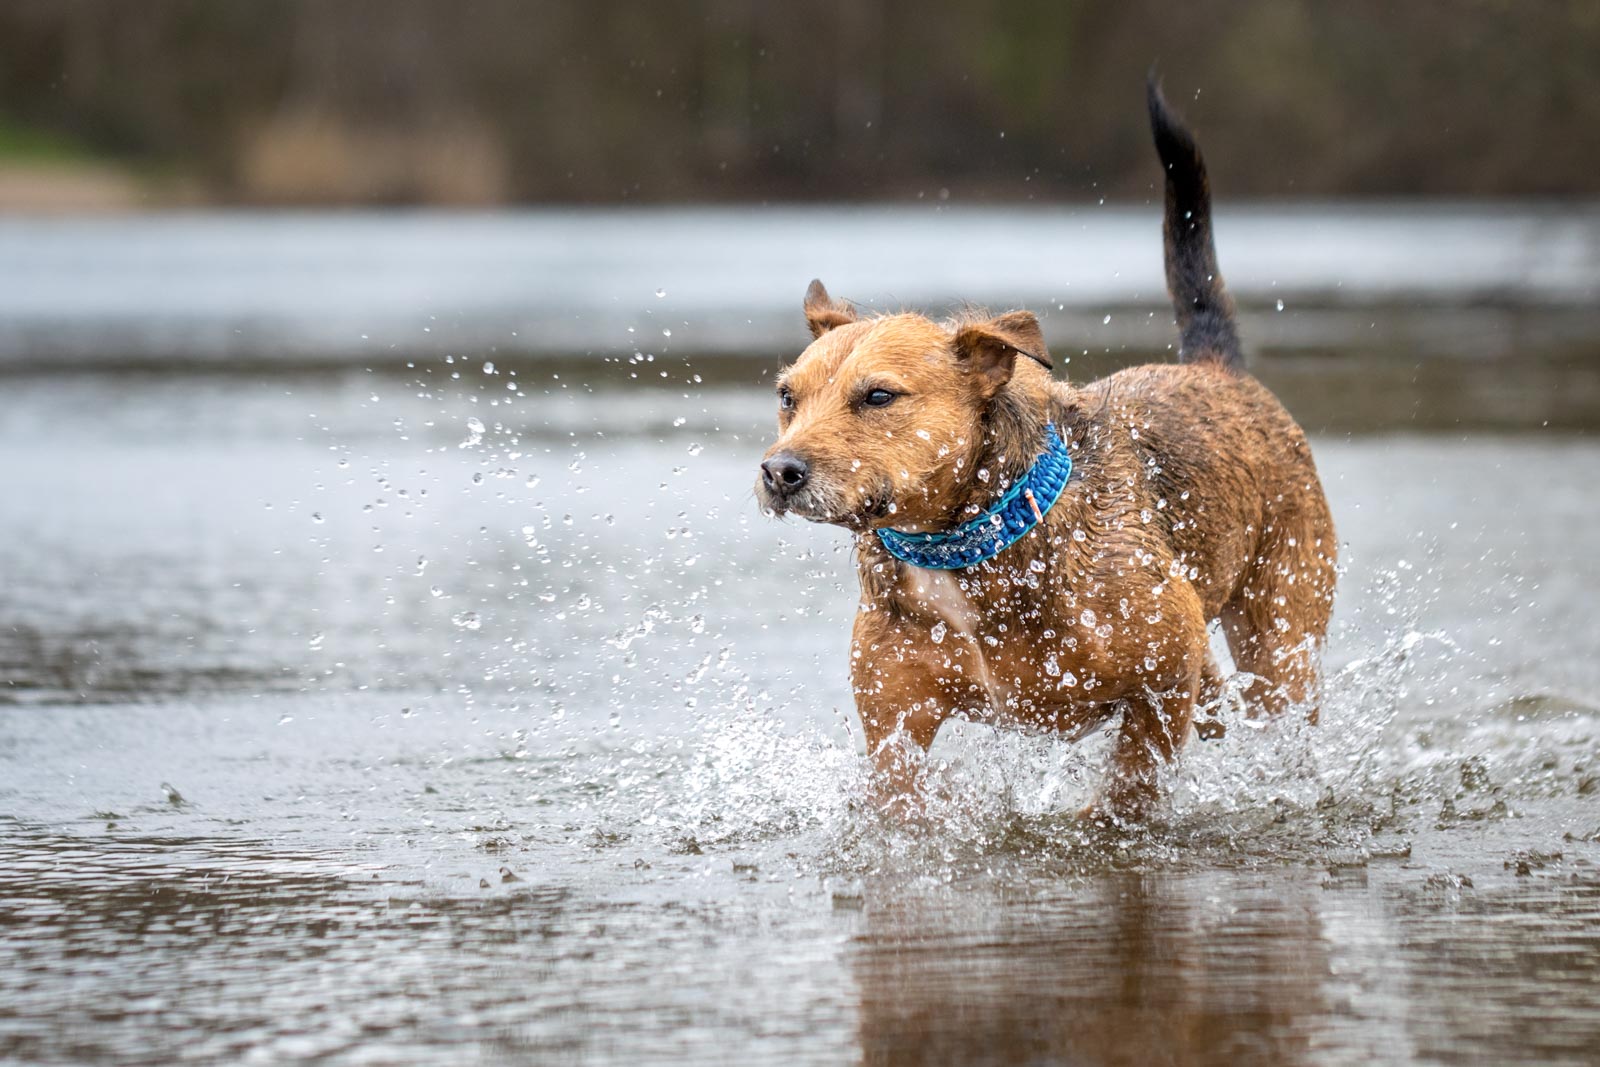 Irish-Terrier-Mix läuft durch's spritzende Wasser eines Sees